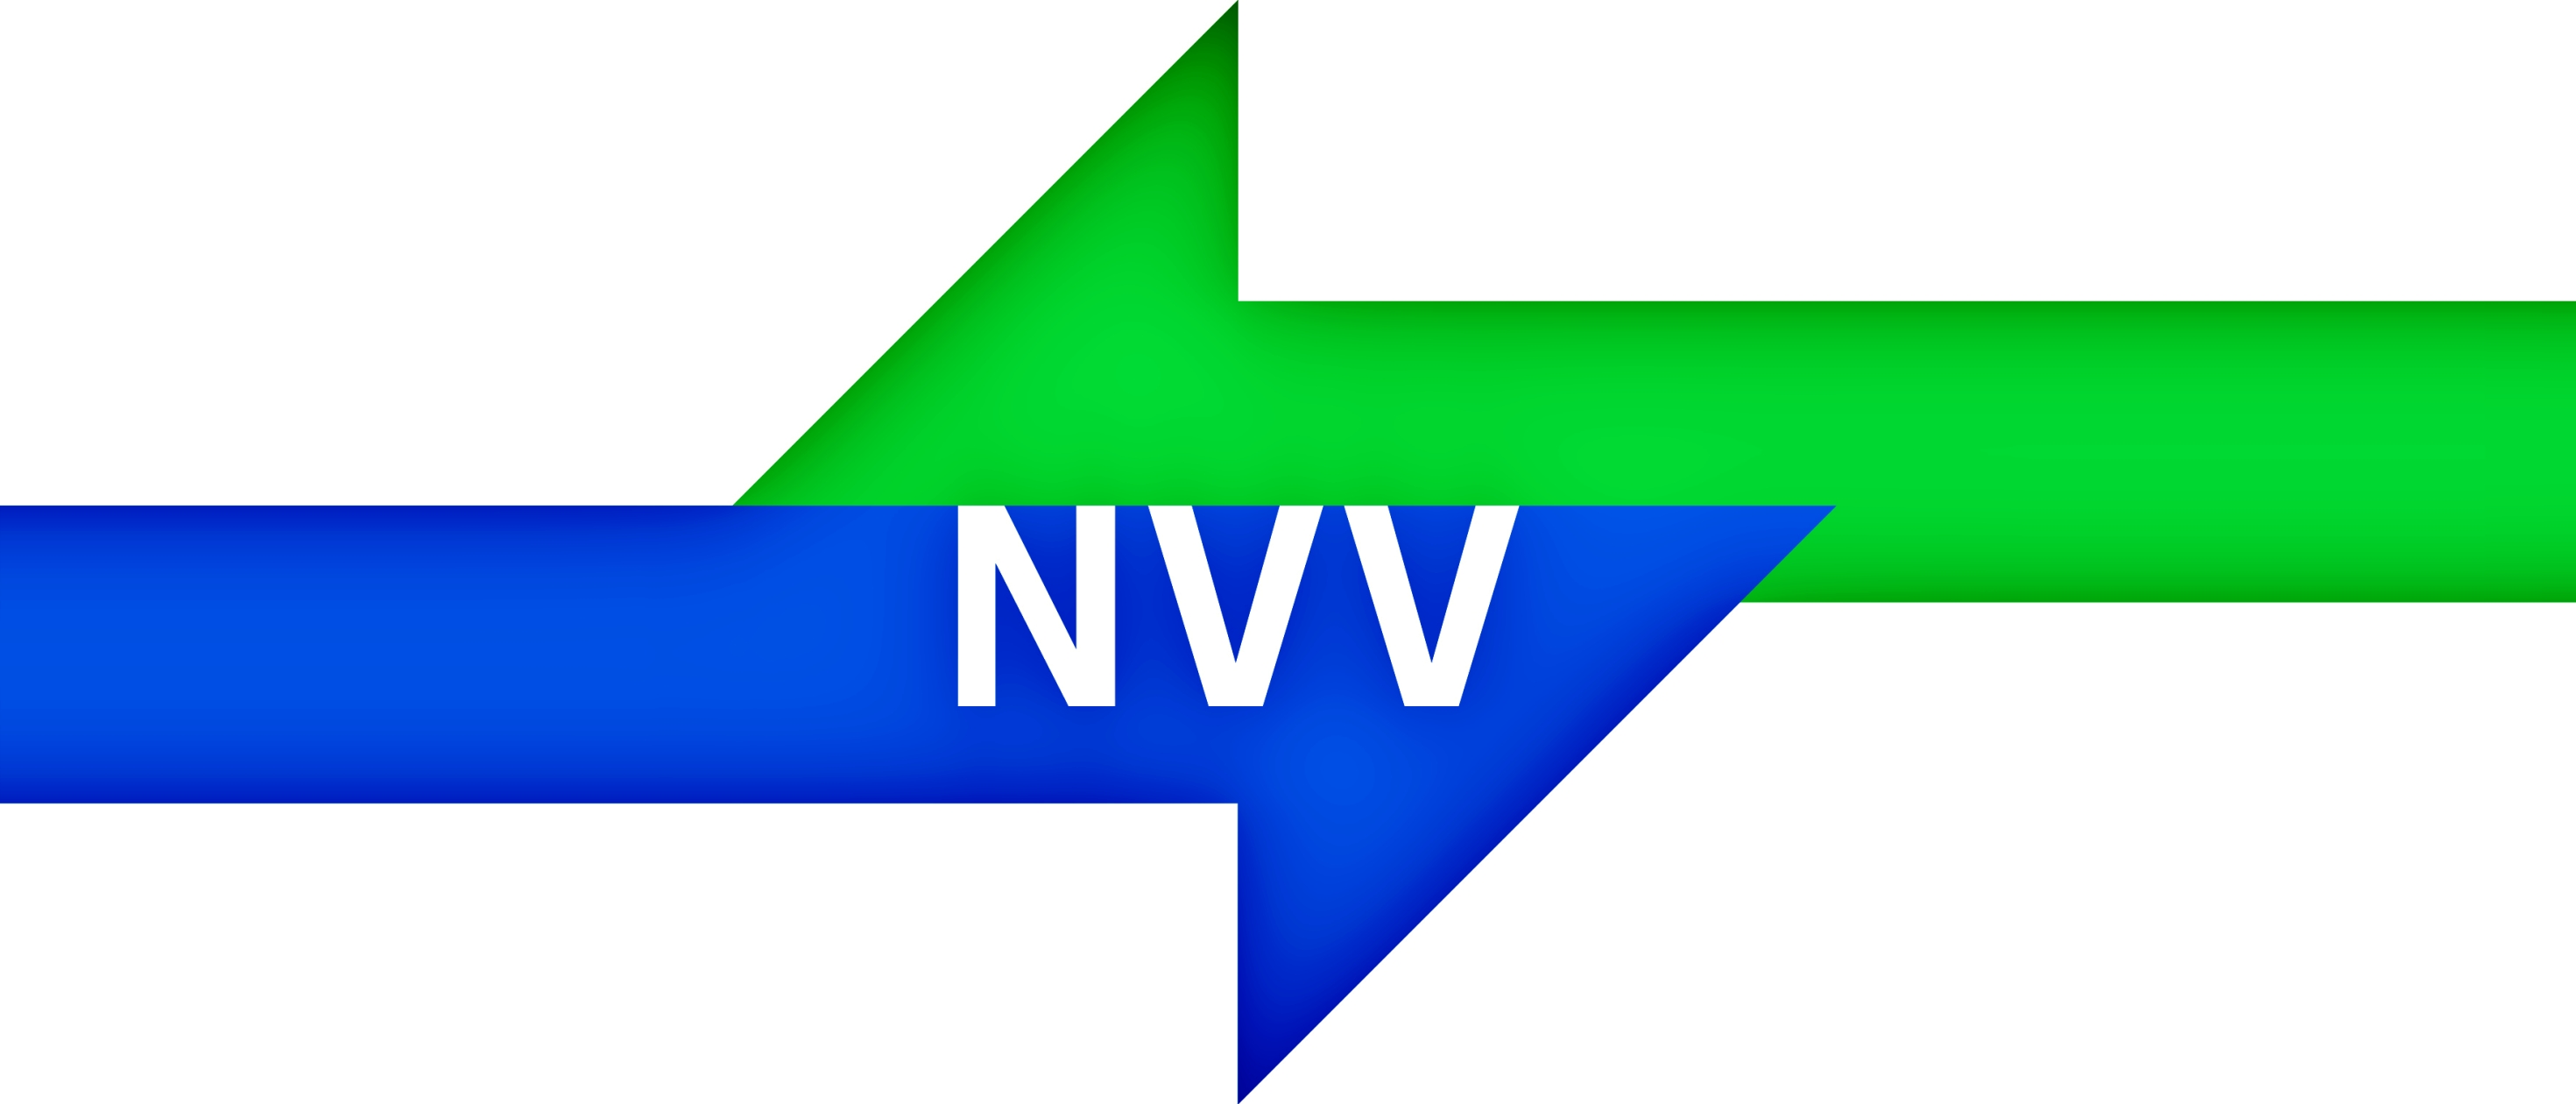 NVV Logo JPEG